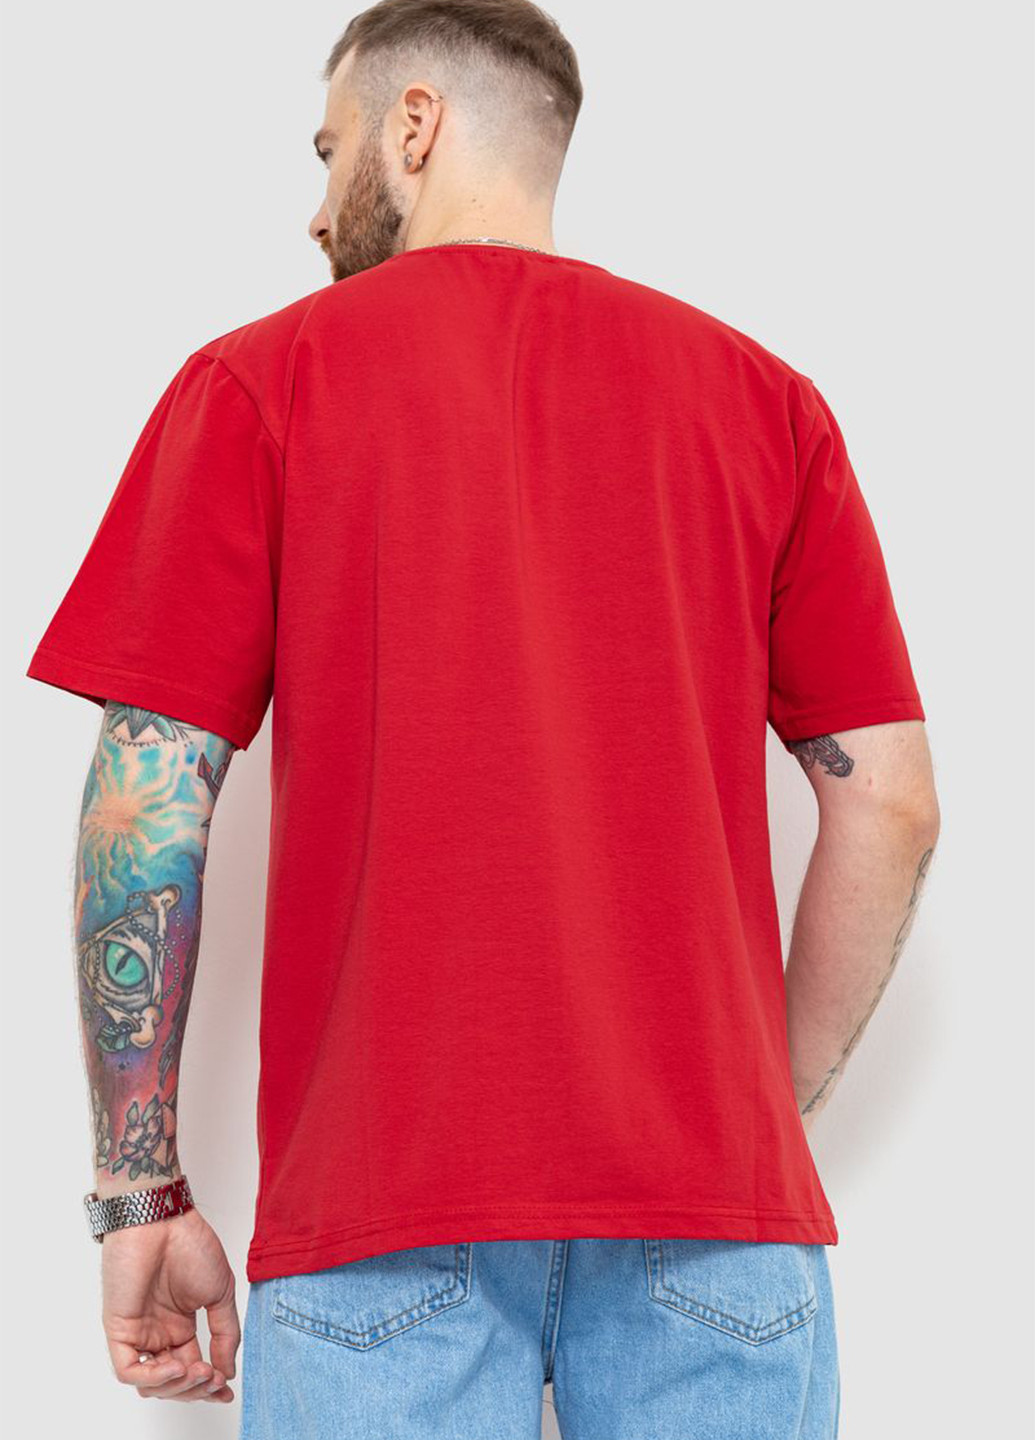 Червона футболка Ager